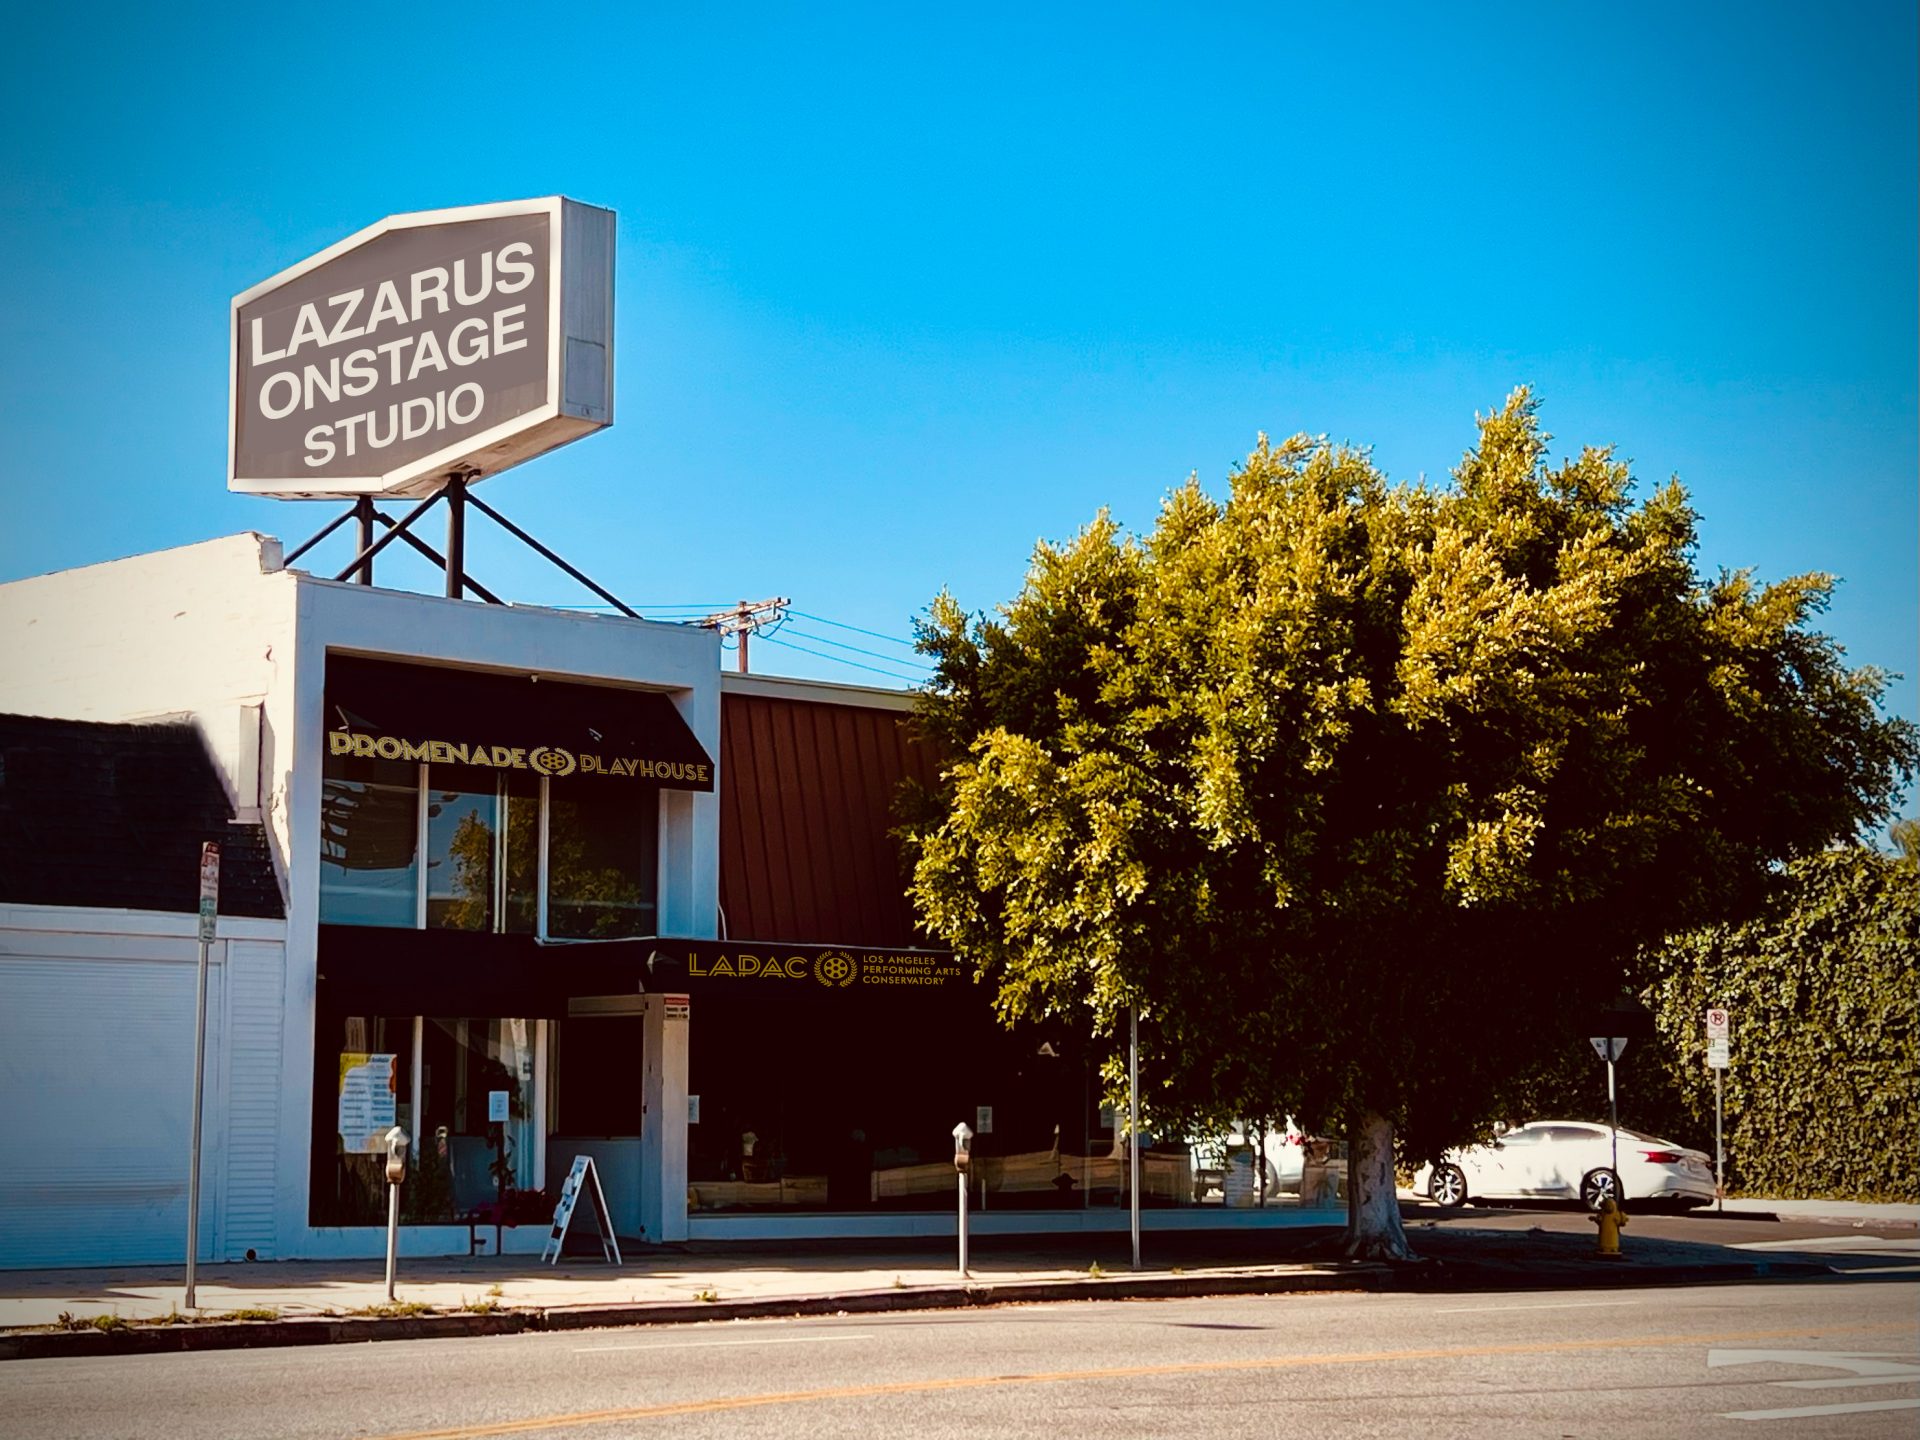 Lazarus Onstage building